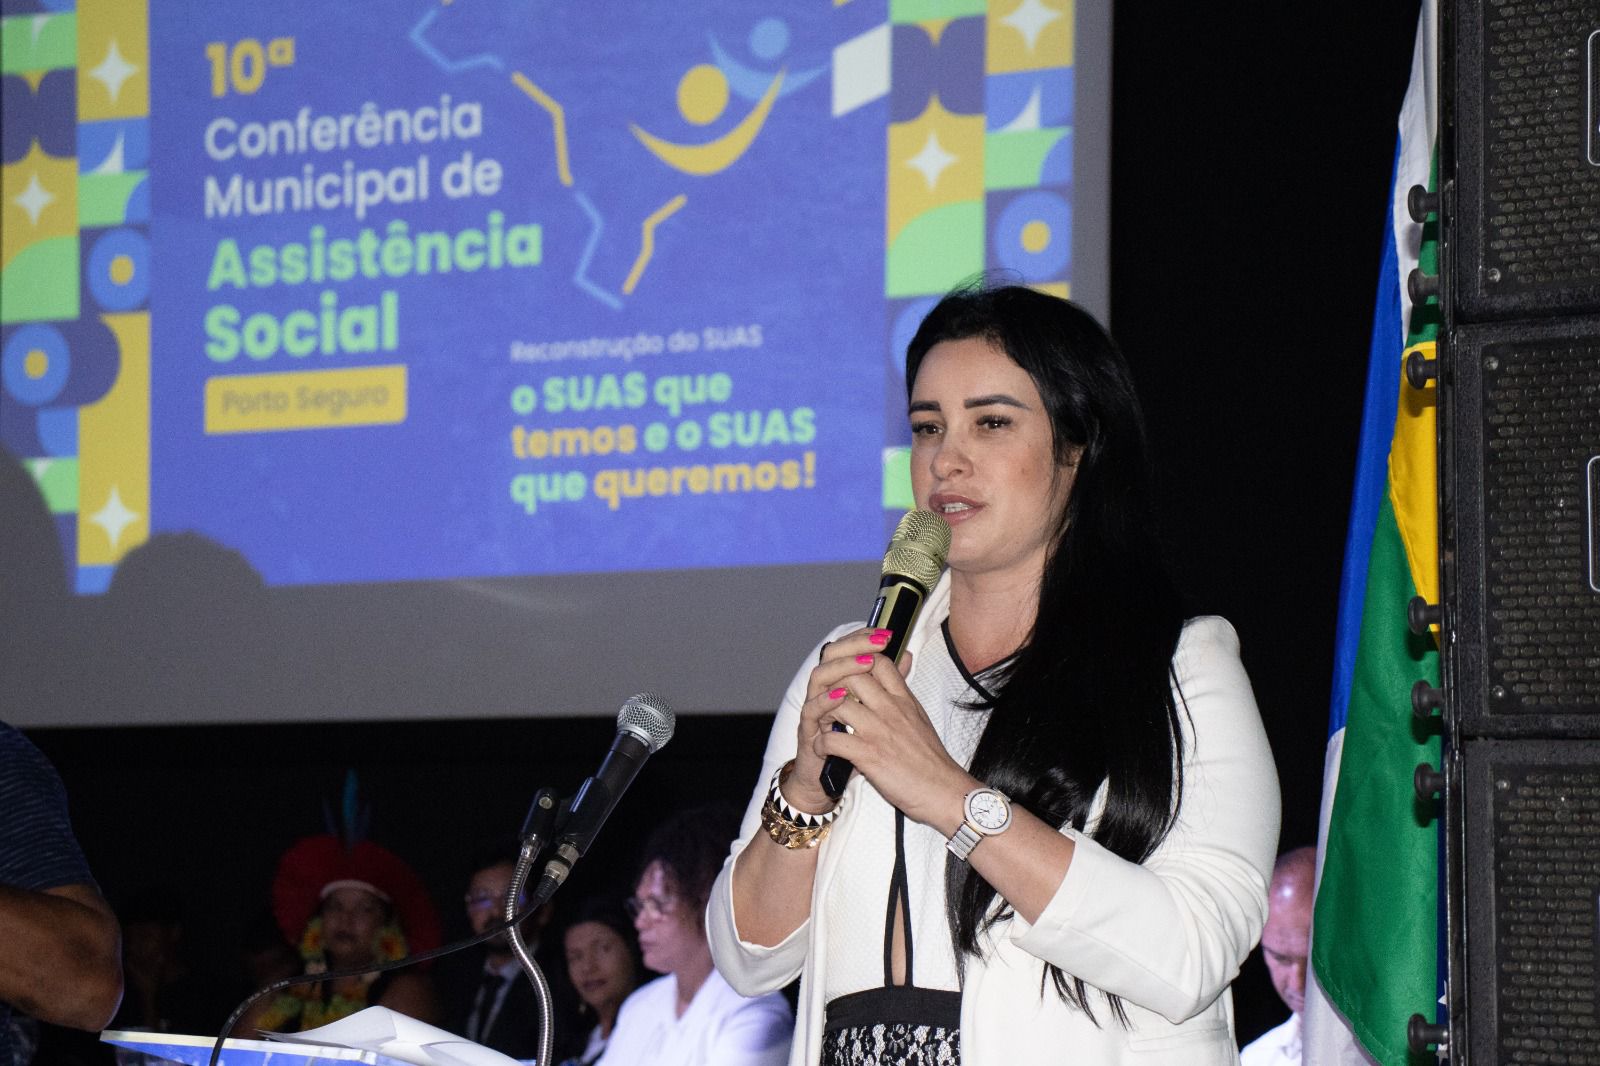 Conferência Municipal de Assistência Social reúne mais de 500 participantes 22